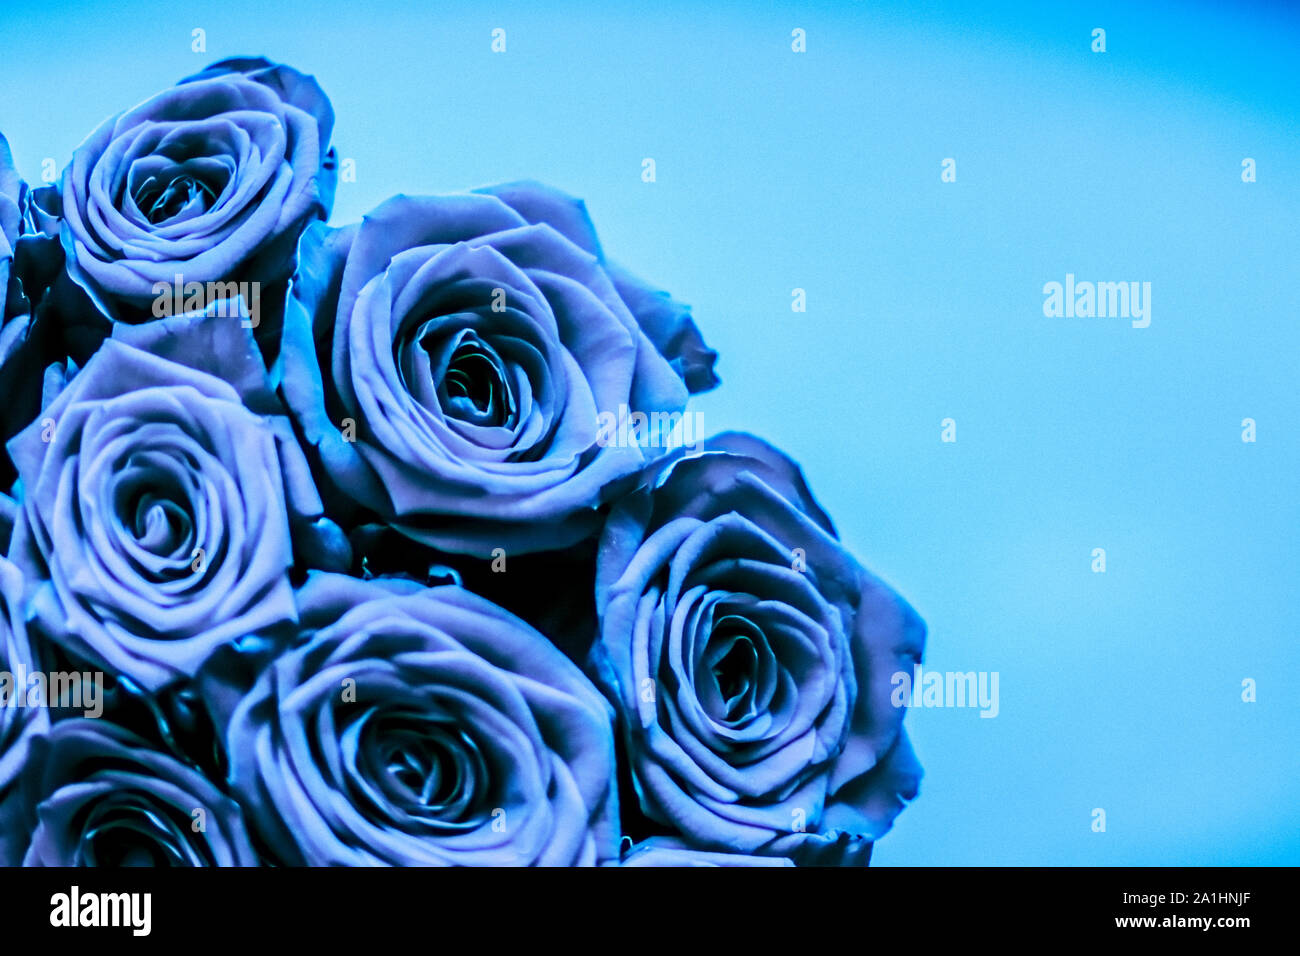 Blühende Rose, Blüte und Valentinstag geschenk Konzept - Glamour luxus  Blumenstrauß der blaue Rosen, Blumen in voller Blüte so blumig Urlaub  Hintergrund Stockfotografie - Alamy